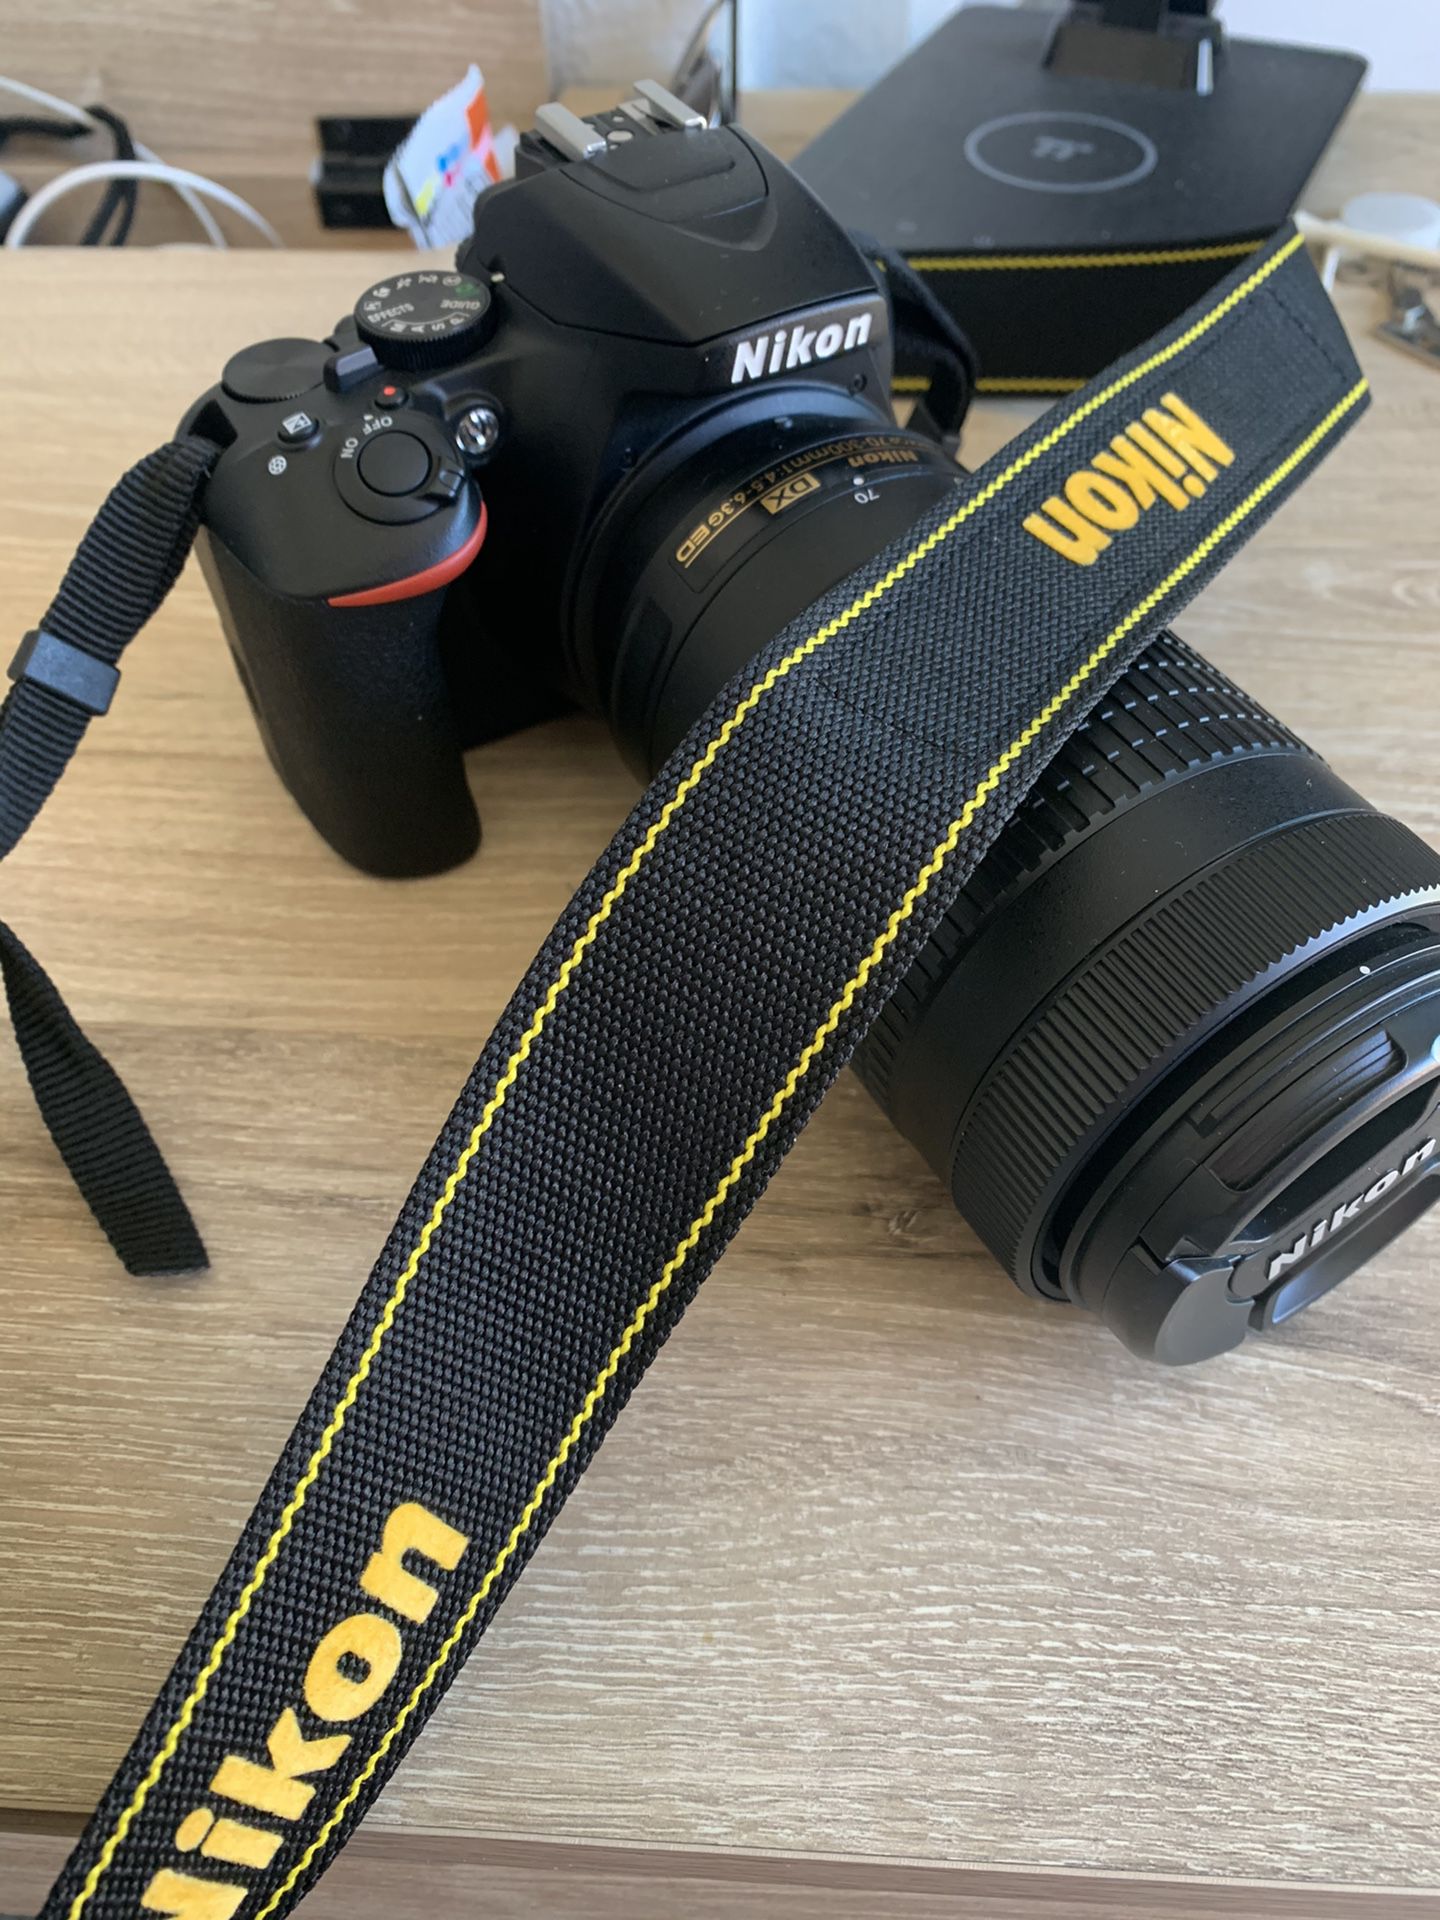 Nikon - D3500 DSLR Camera with AF-P DX NIKKOR 18-55mm f/3.5-5.6G VR and AF-P DX NIKKOR 70-300mm